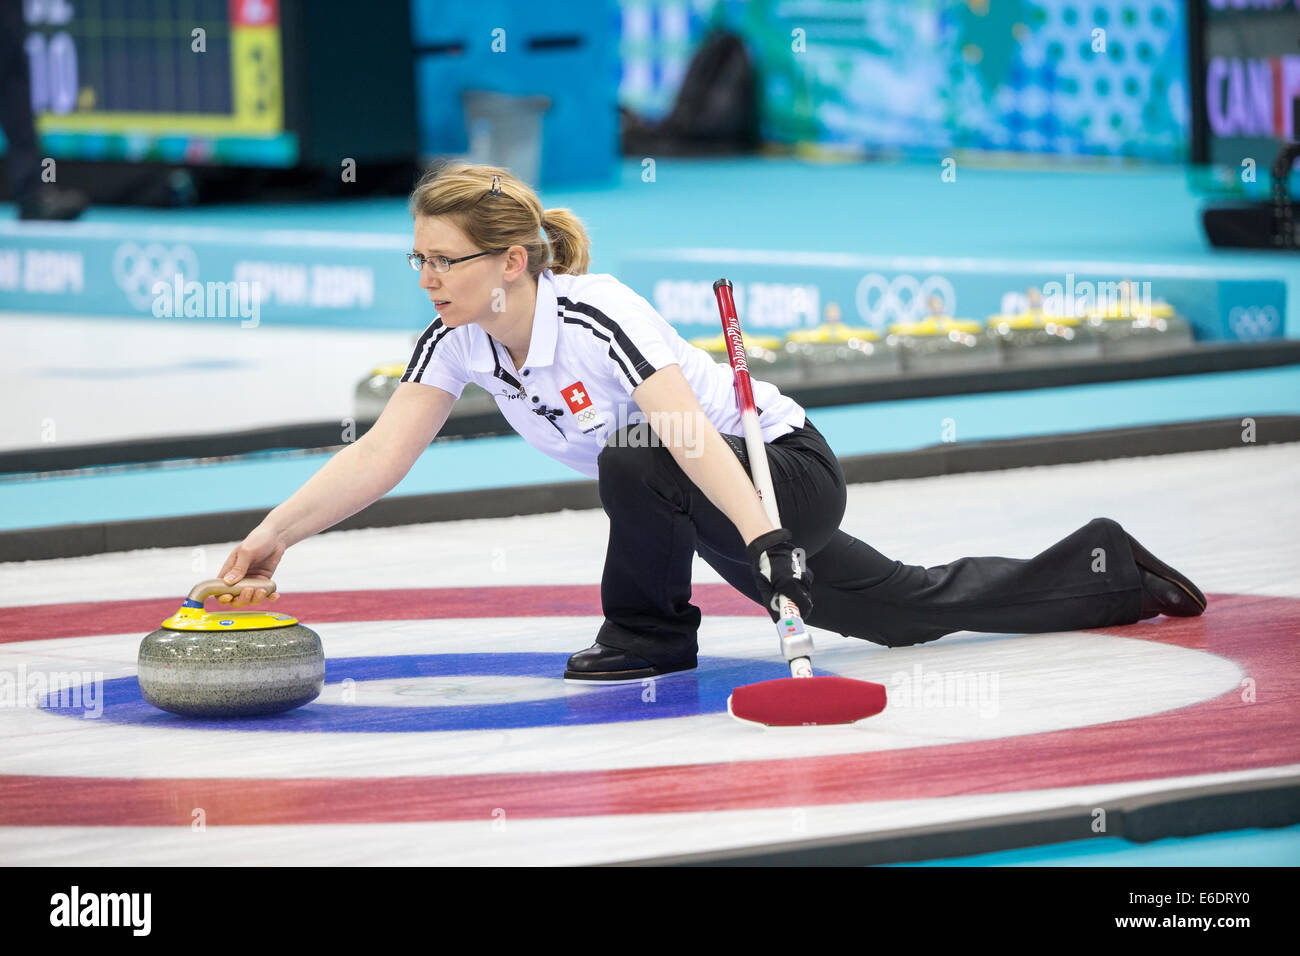 Suisse de l'équipe, Janine Greiner joue une pierre au cours de la compétition de curling aux Jeux Olympiques d'hiver de Sotchi en 2014, Banque D'Images